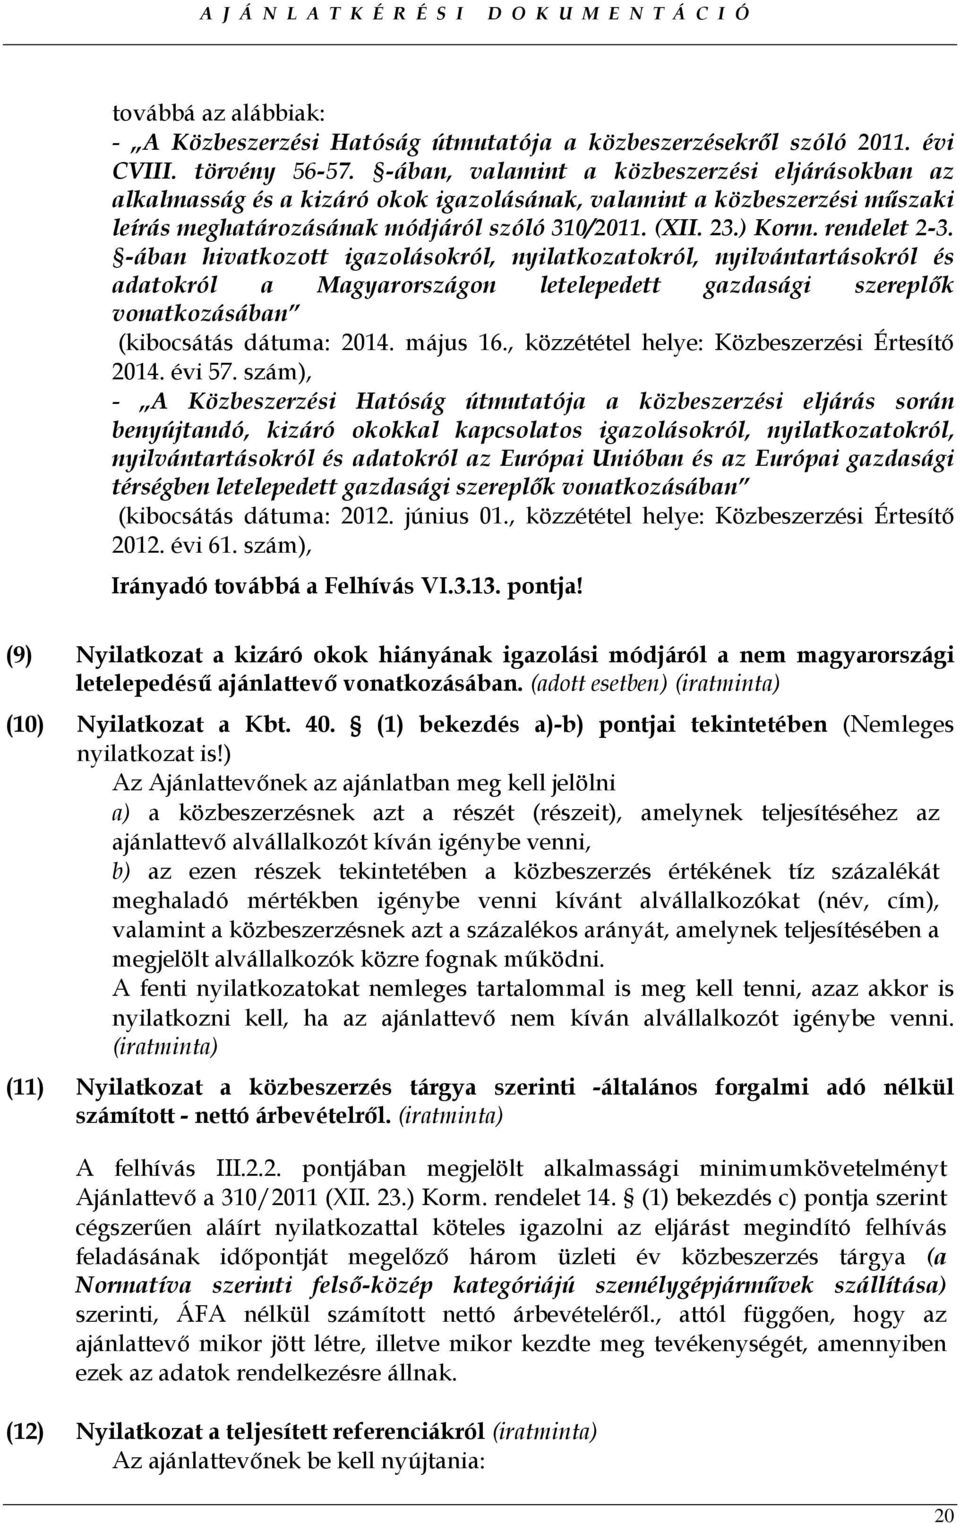 rendelet 2-3. -ában hivatkozott igazolásokról, nyilatkozatokról, nyilvántartásokról és adatokról a Magyarországon letelepedett gazdasági szereplık vonatkozásában (kibocsátás dátuma: 2014. május 16.